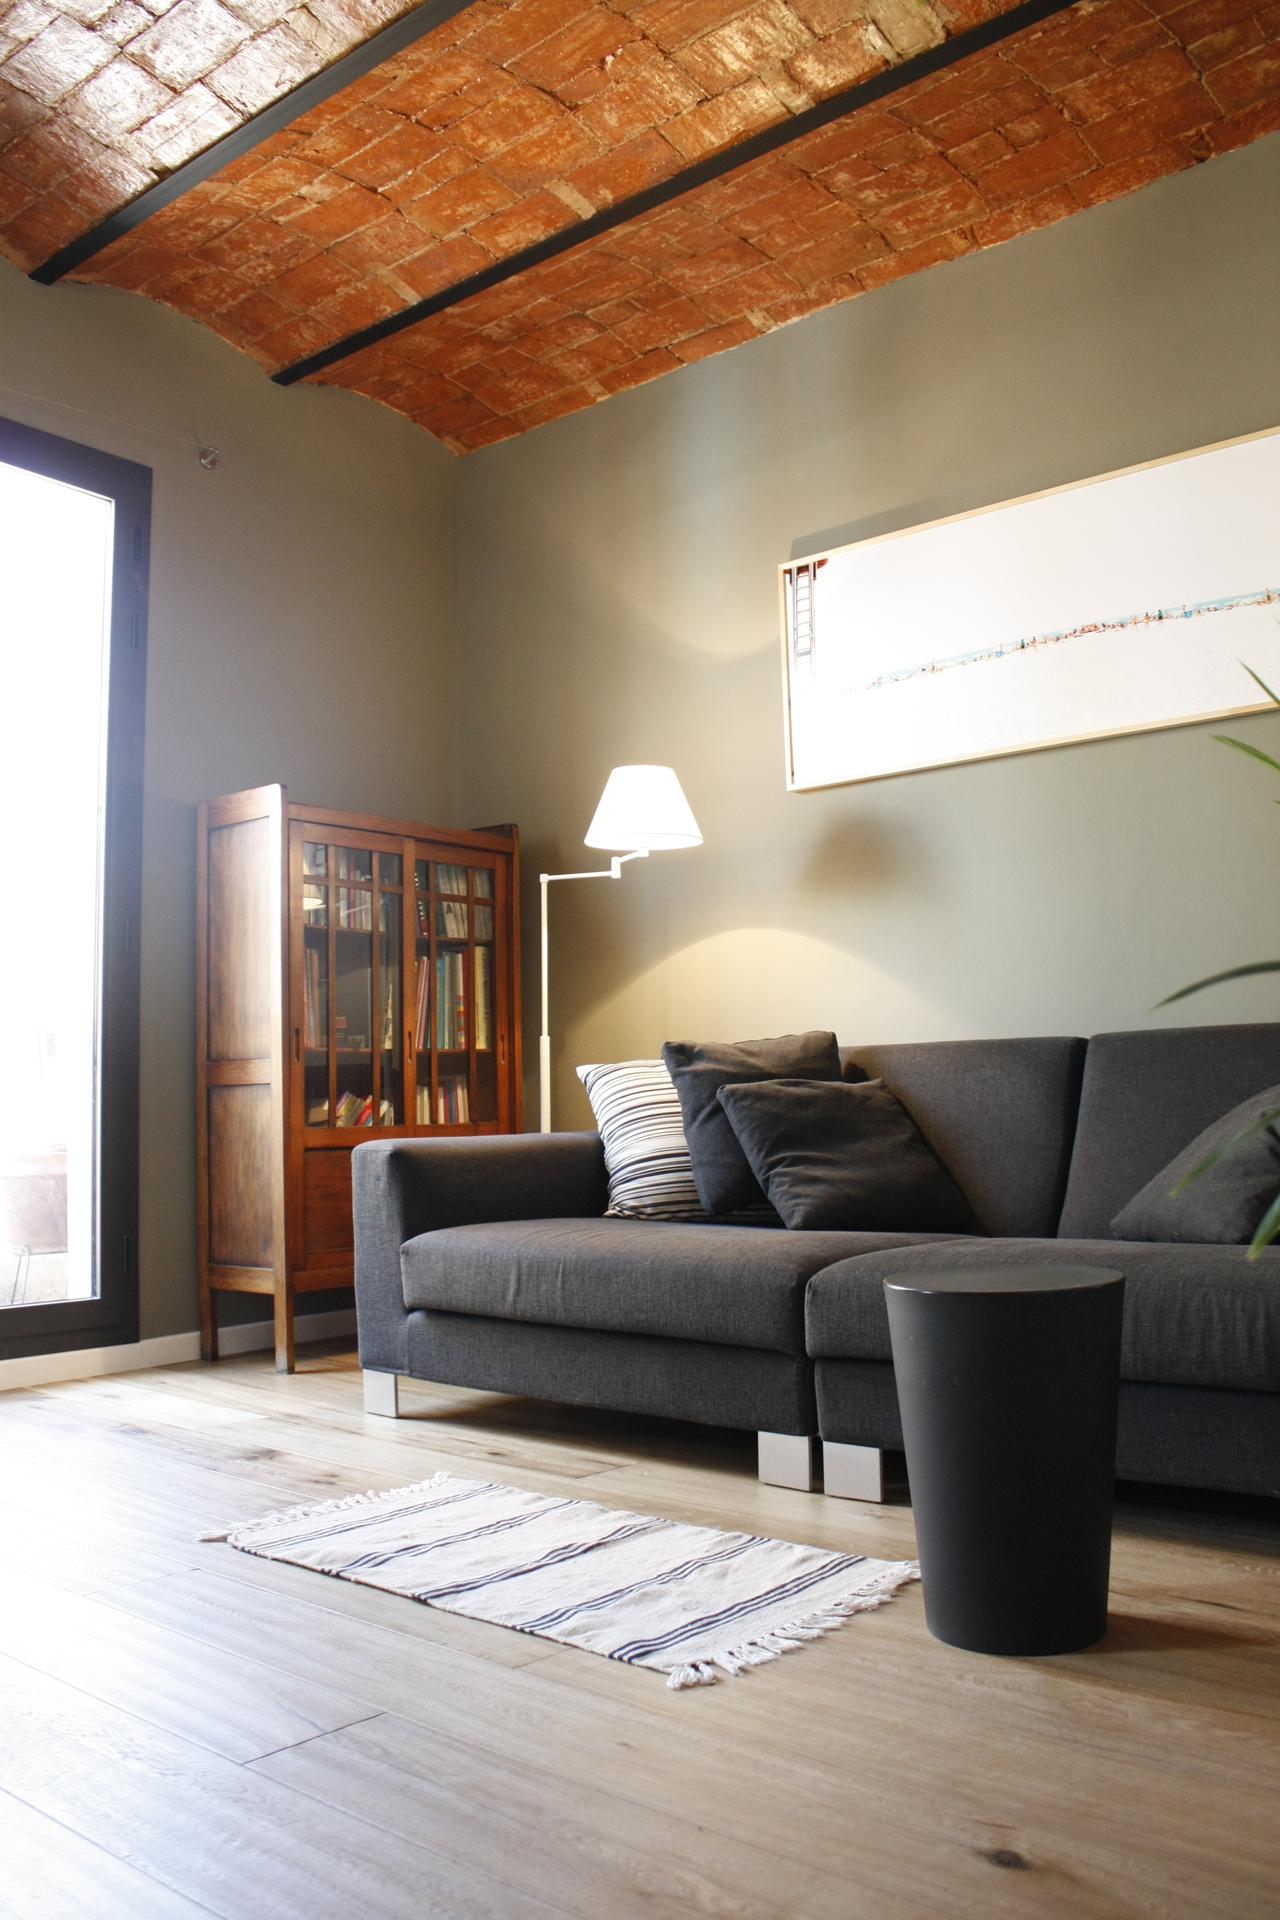 Wohnzimmer #couchtisch #beistelltisch #vitrine #wandbild ©Victoria Aragonés / Innenarchitektur